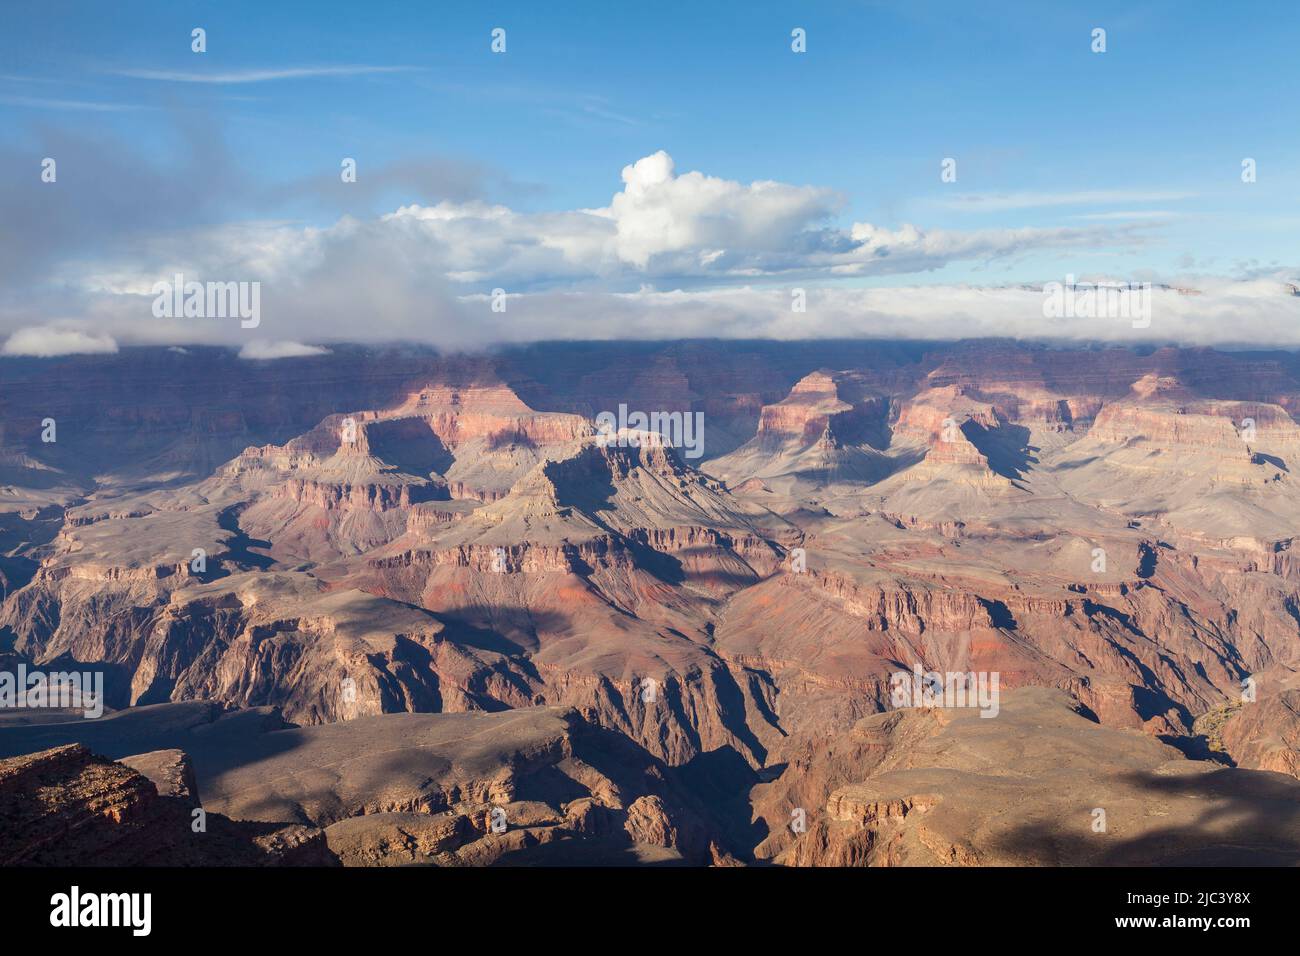 Vista desde Mather Point, South Rim, Grand Canyon, Arizona, Estados Unidos Foto de stock